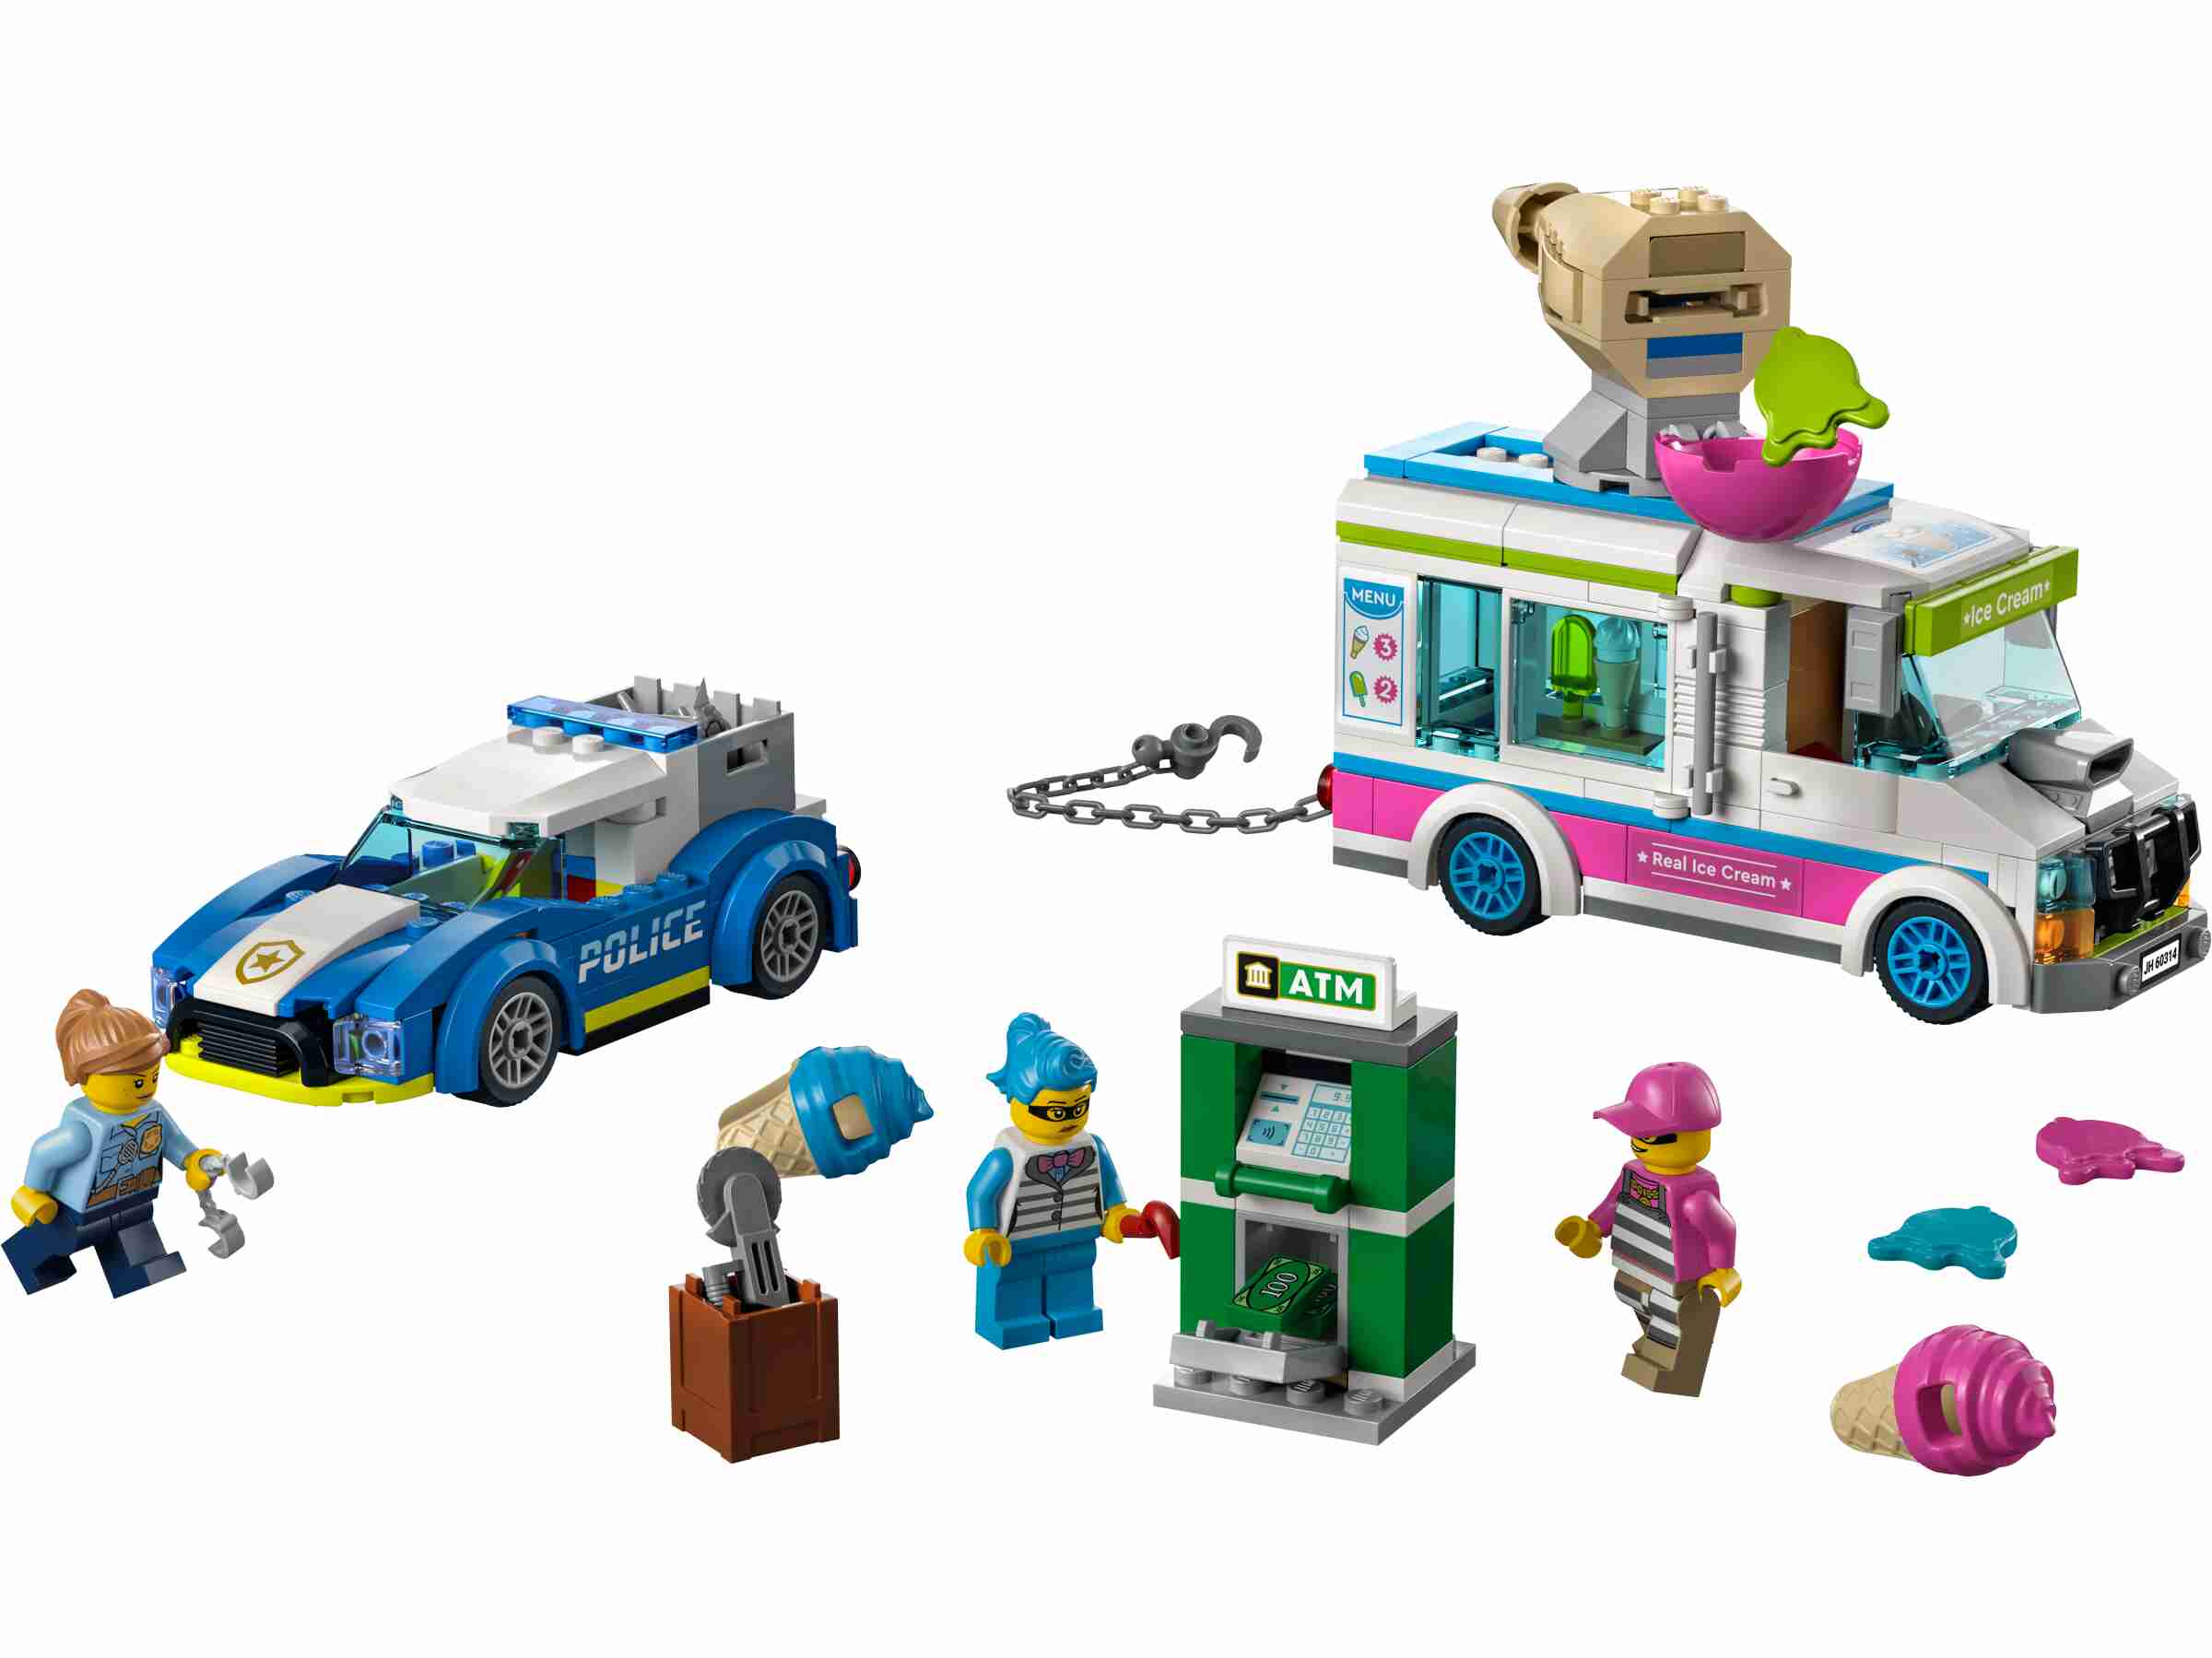 LEGO 60314 City Eiswagen-Verfolgungsjagd, Polizeiverfolgung, Eiskanone